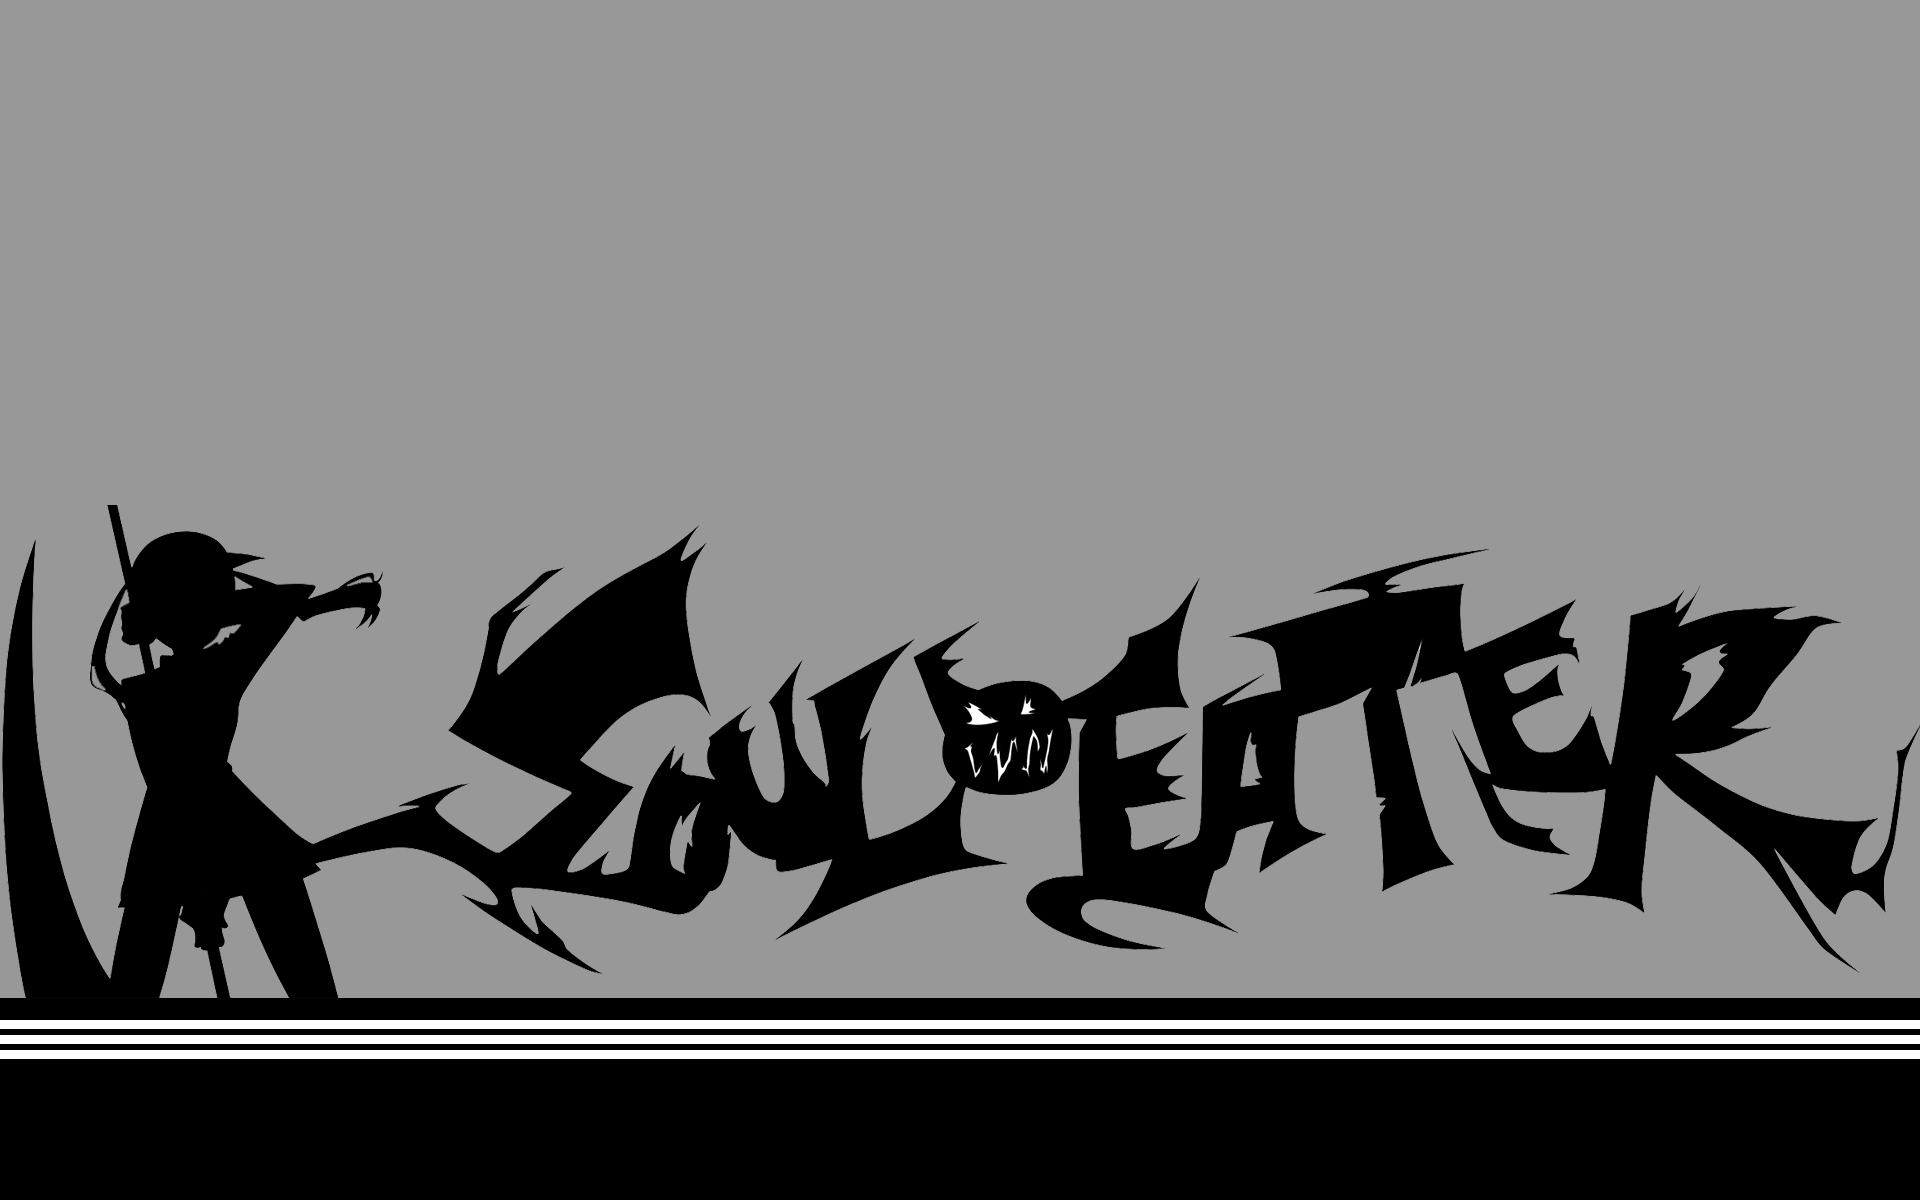 Soul Eater Logo